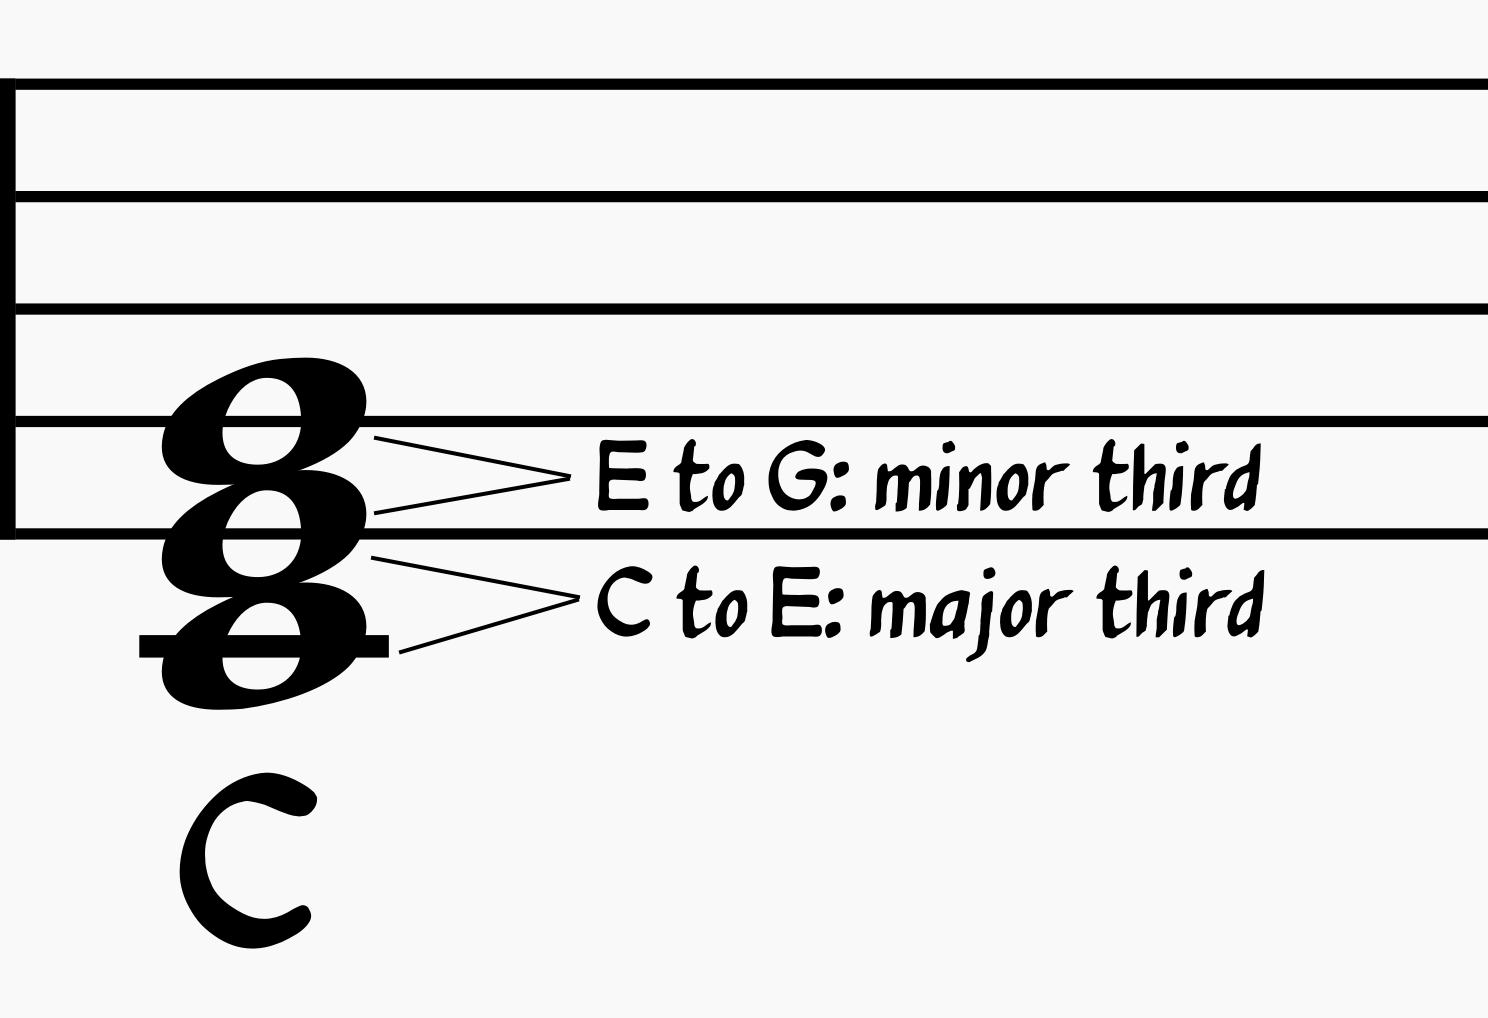 Major triad formula for a C chord